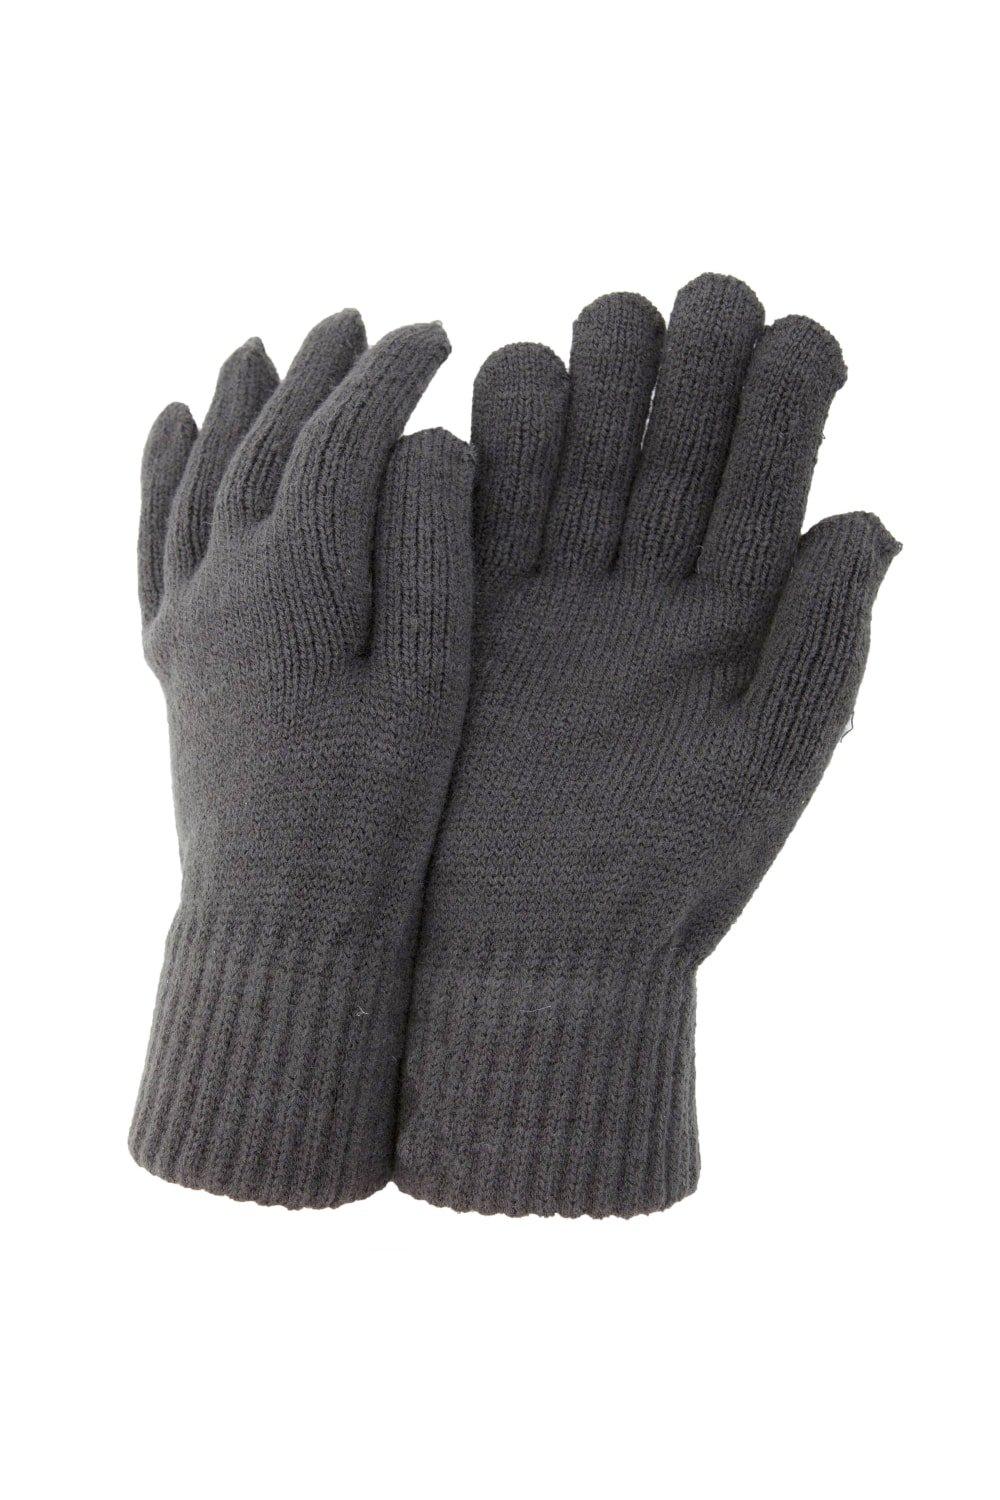 цена РАСПРОДАЖА - Термовязаные зимние перчатки Universal Textiles, серый